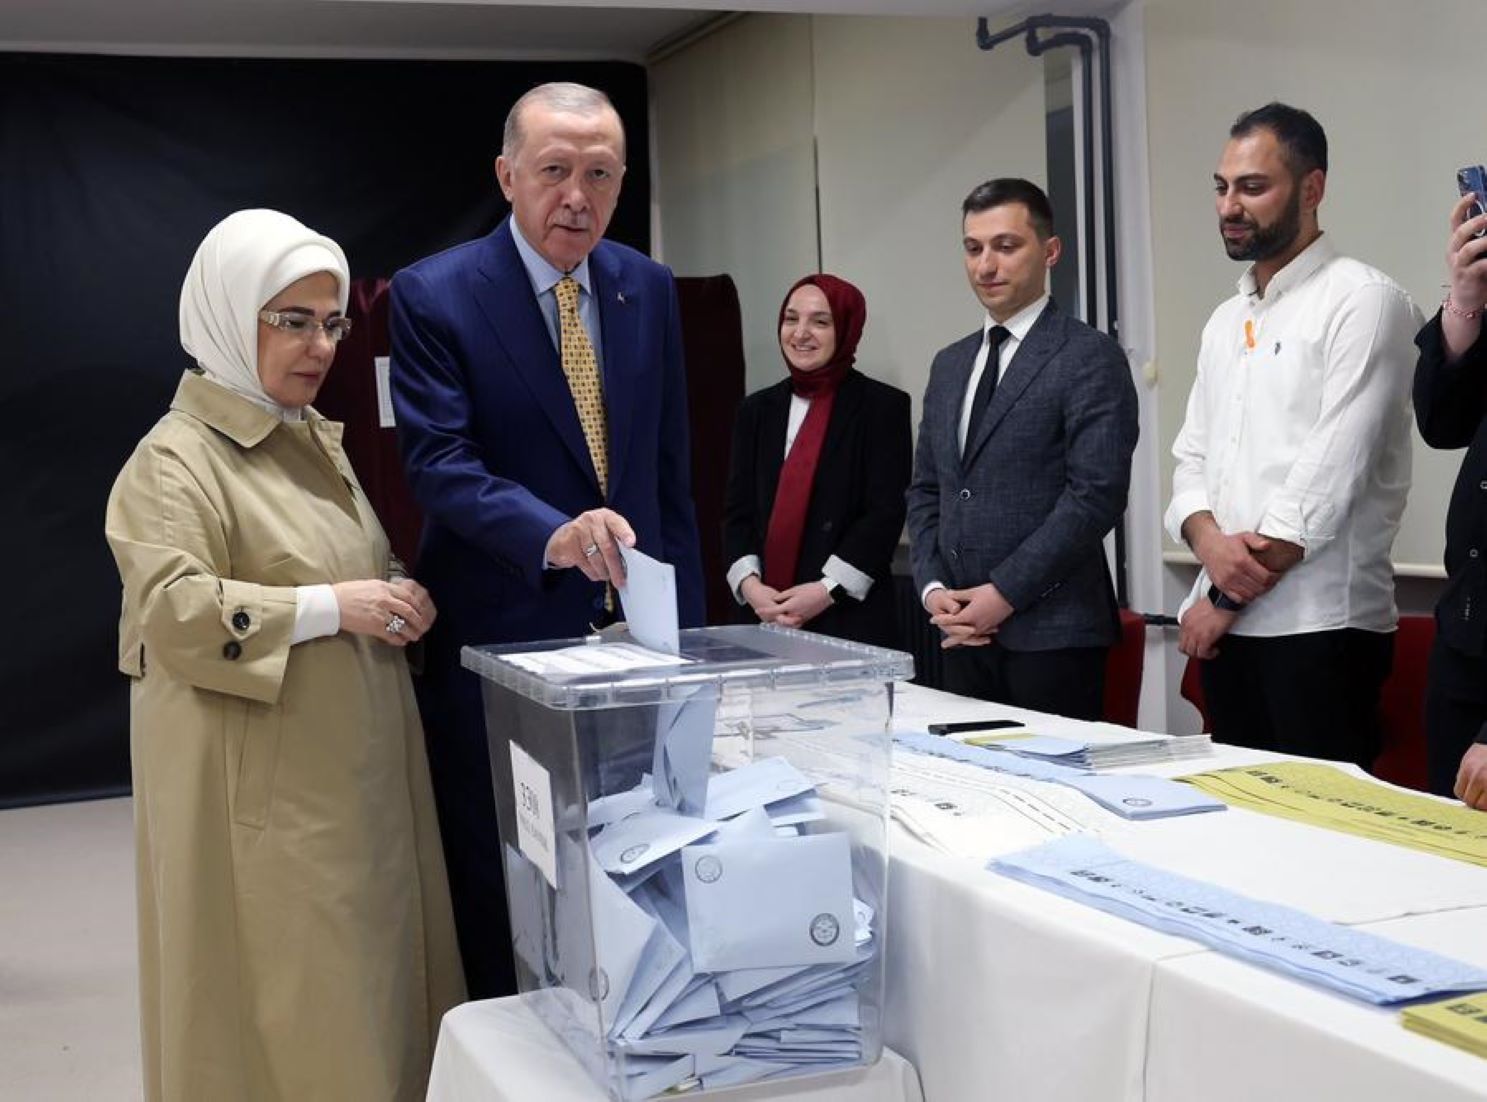 Türkiye’s Opposition Takes Election Lead In Key Cities